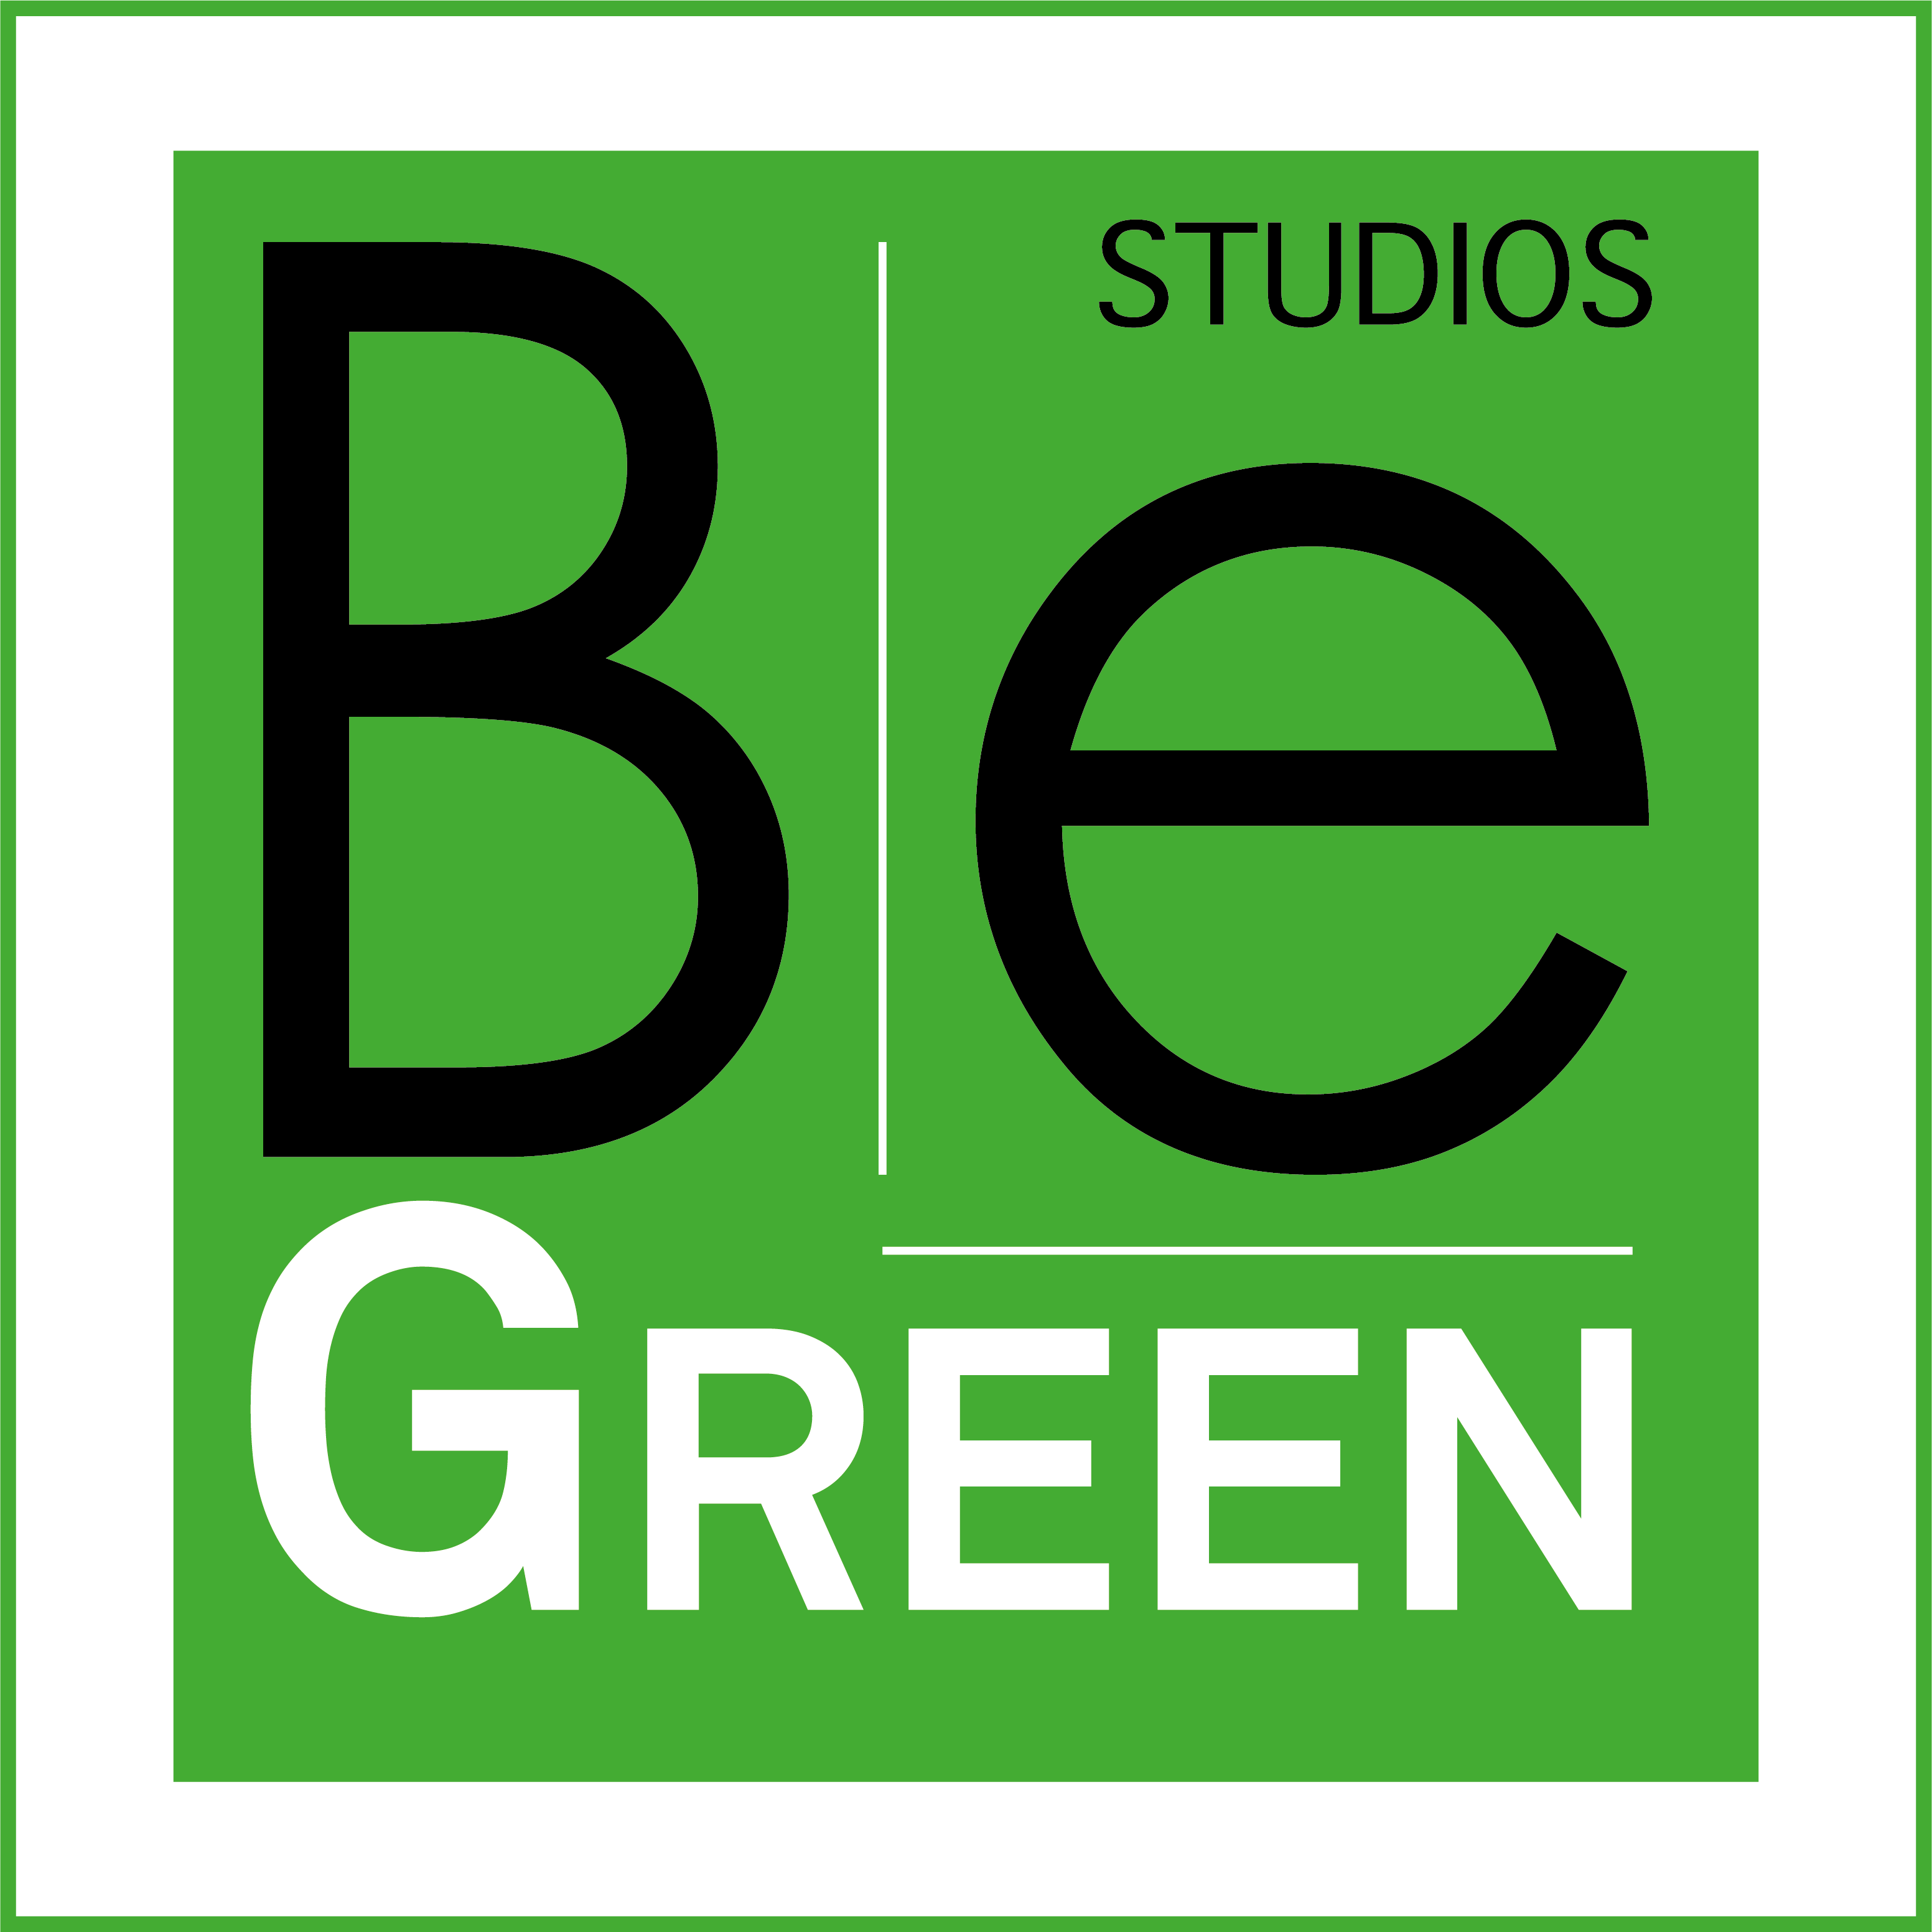 Studios Begreen